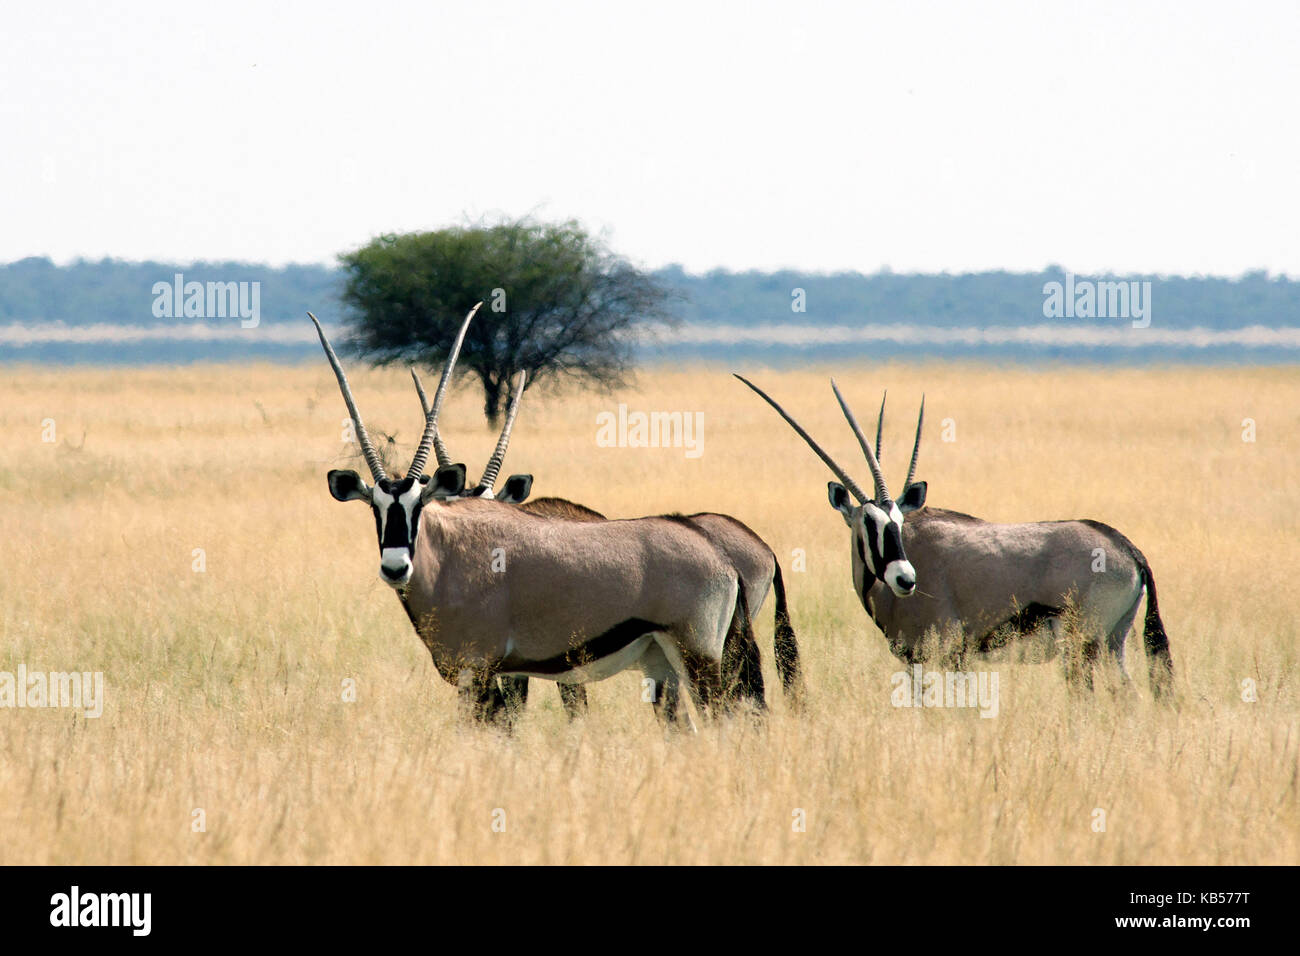 La Namibie, Kunene, Etosha National Park, gemsbok (Oryx gazella) Banque D'Images